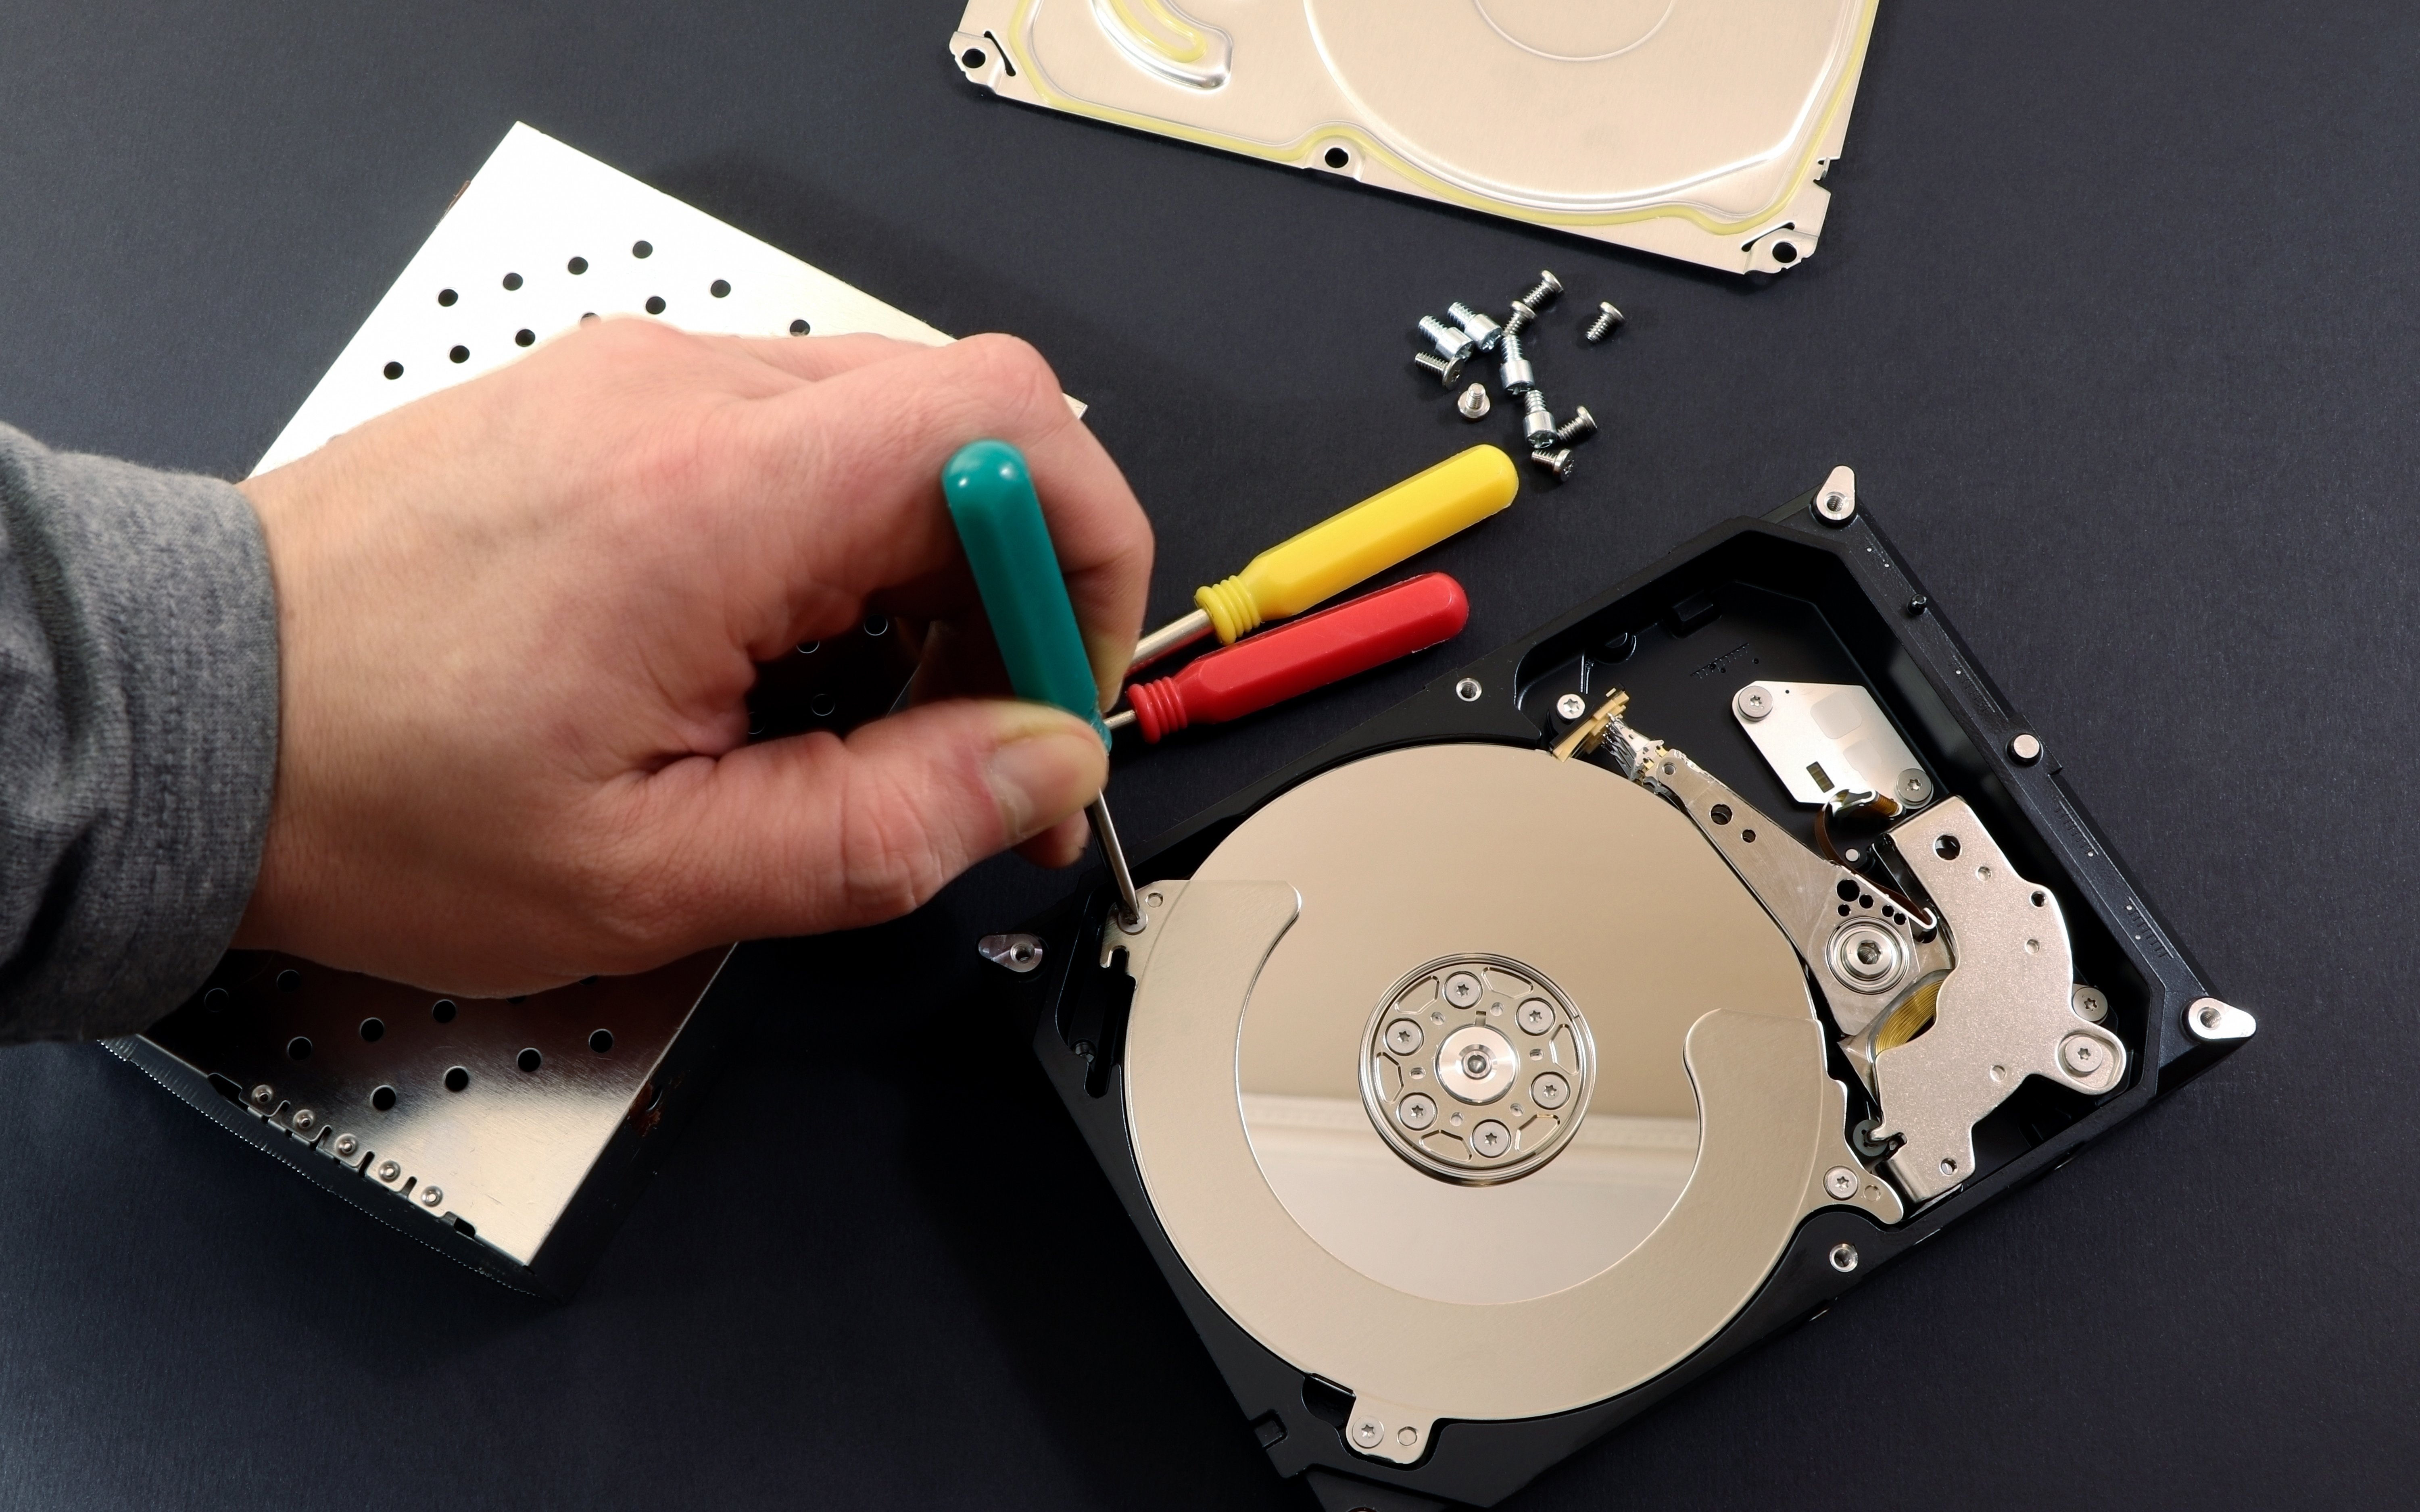 Prüfen Sie, ob Ihre Festplatte physisch beschädigt ist
Ersetzen Sie die Festplatte, wenn sie nicht mehr funktioniert oder stark beschädigt ist